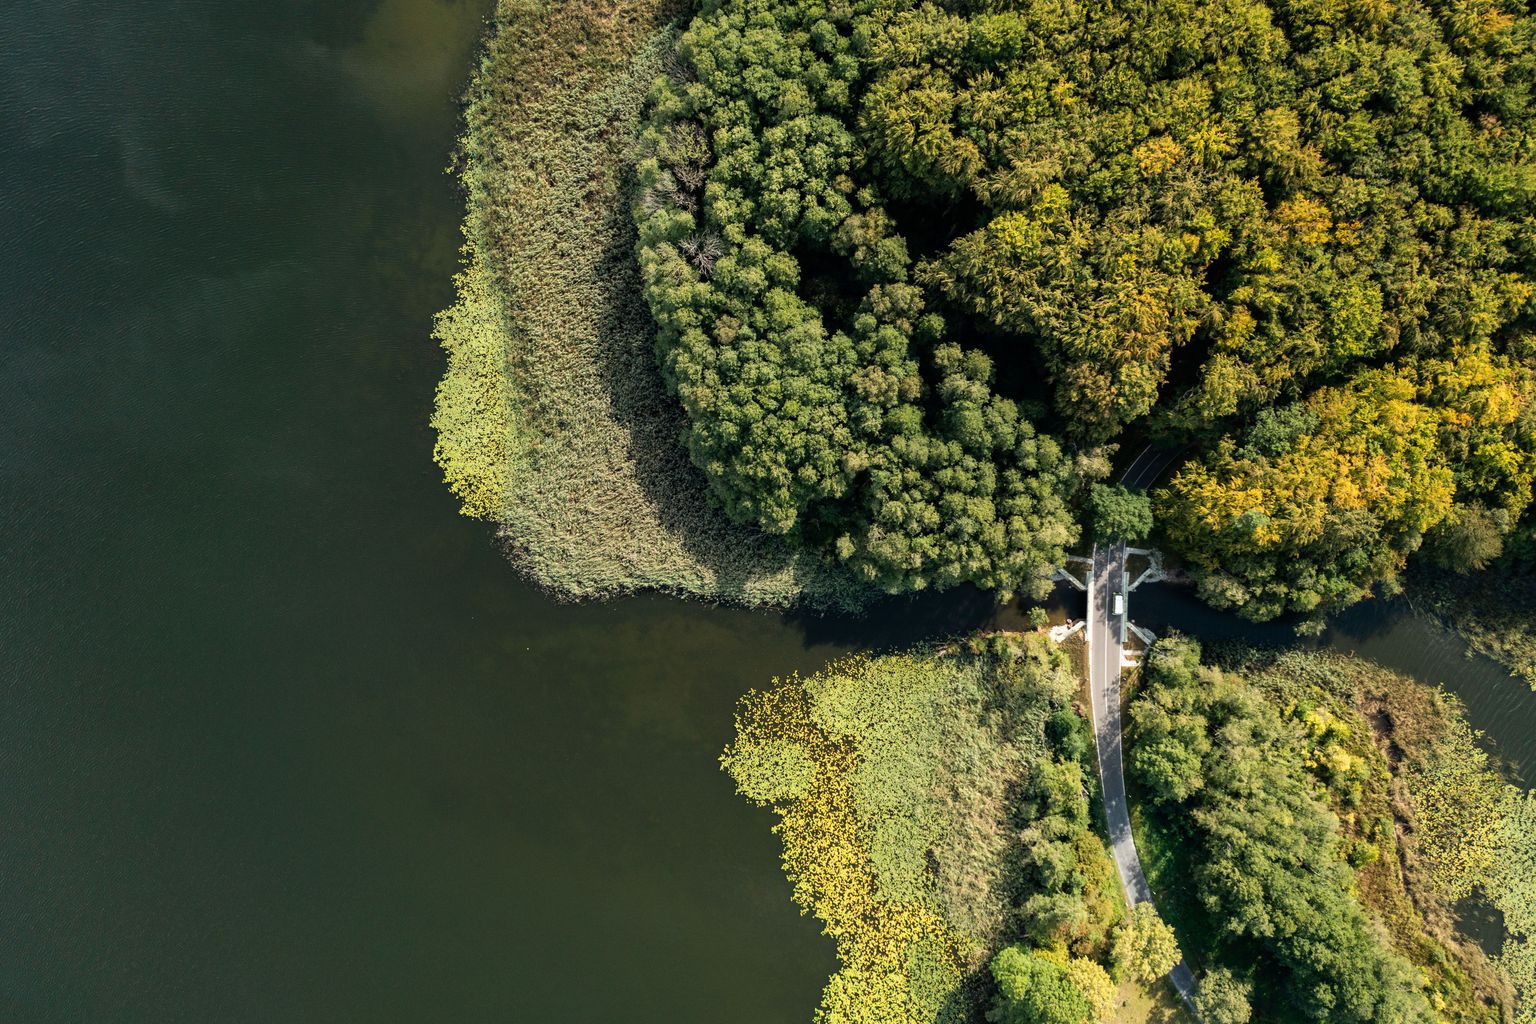 Bild der Mecklenburgischen Seenplatten aus der Vogelperspektive: Landplatten grenzen aneinander, getrennt durch das Wasser der Seen